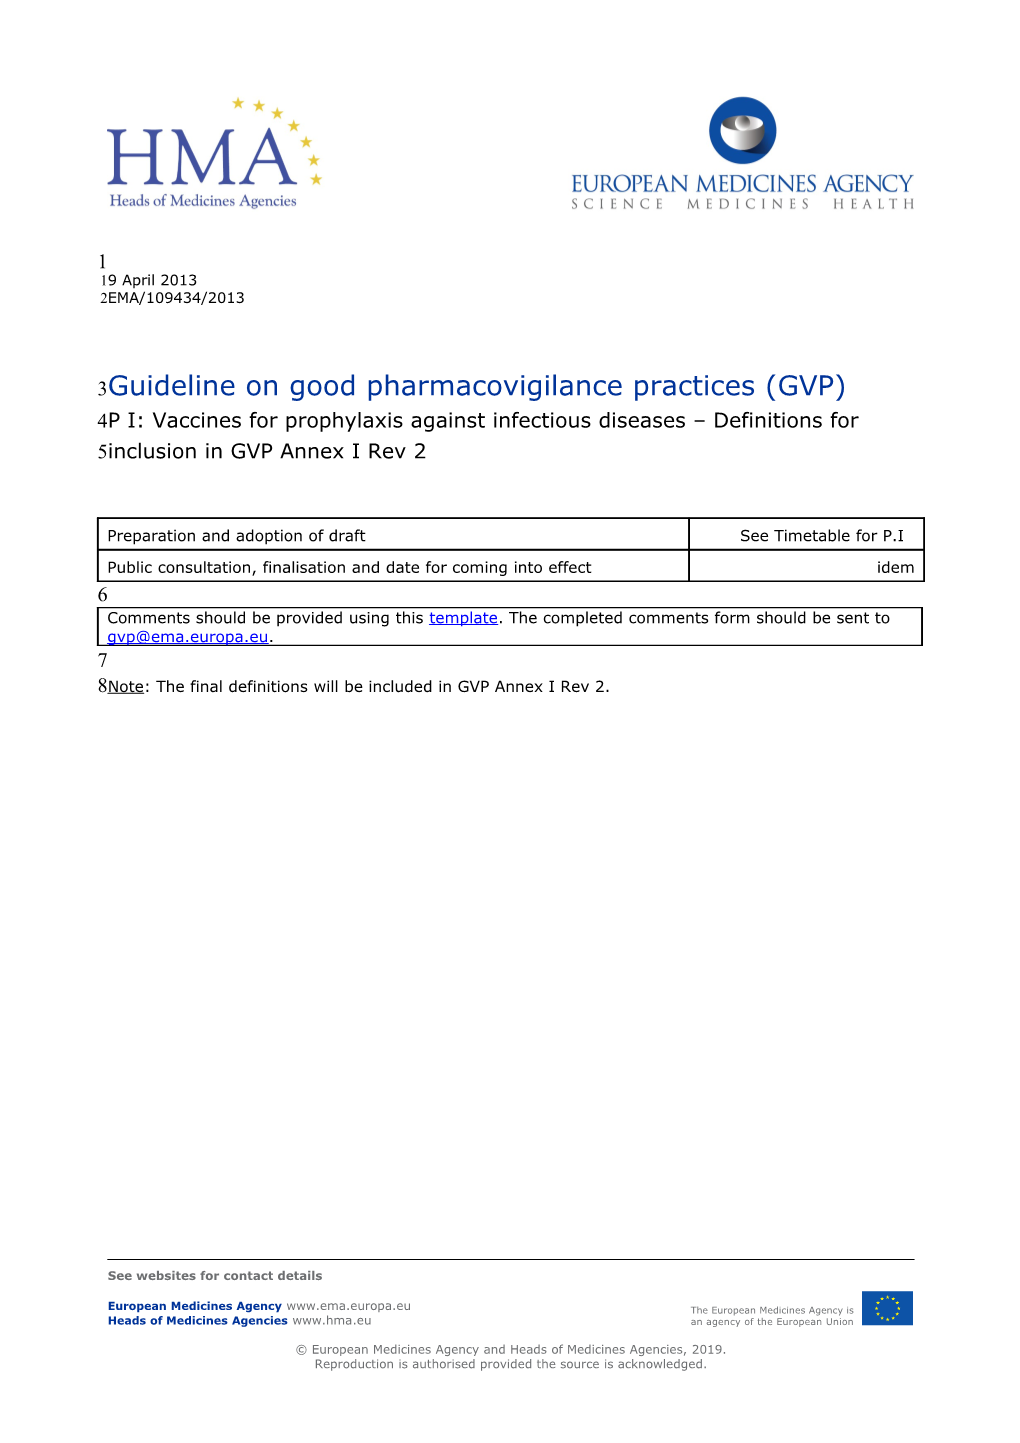 GVP Annex I Definitions P I - Public Consultation Version